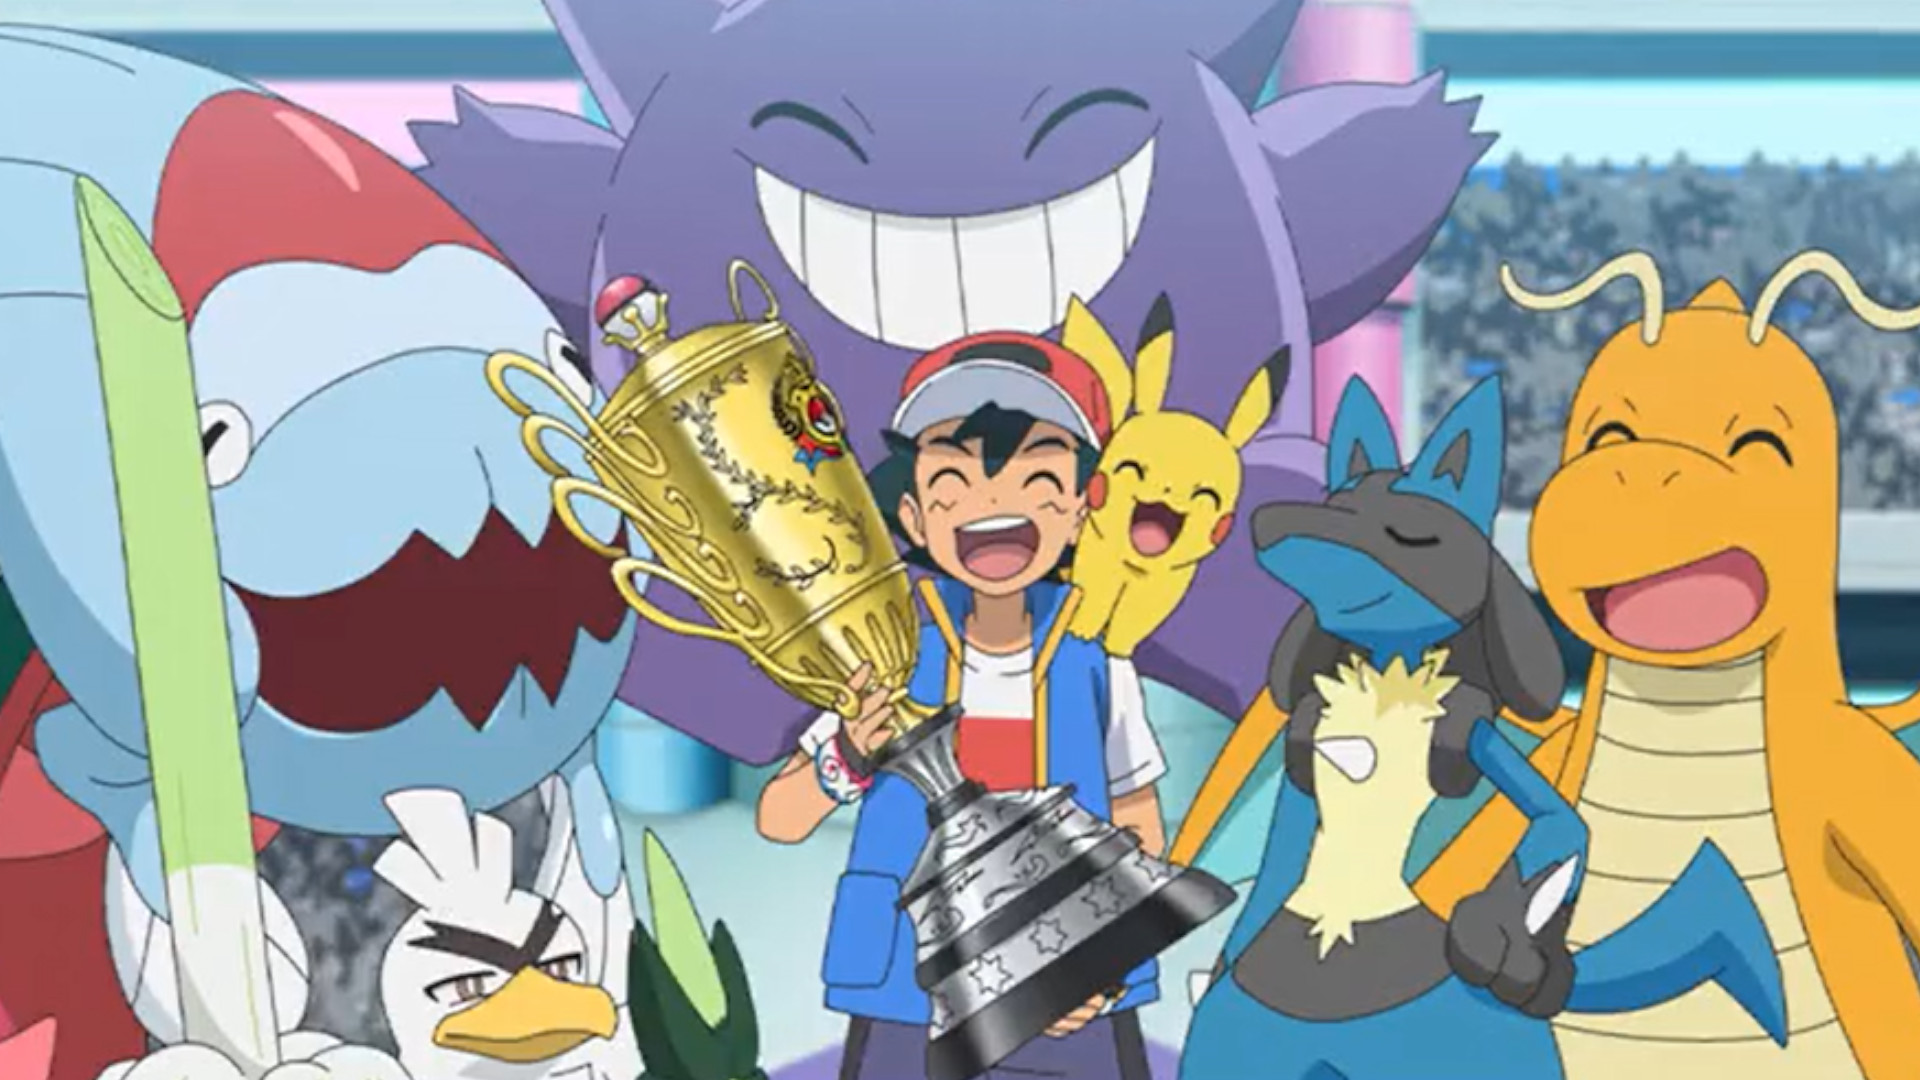 Celebrate the 2022 Pokémon World Championships in Pokémon GO!